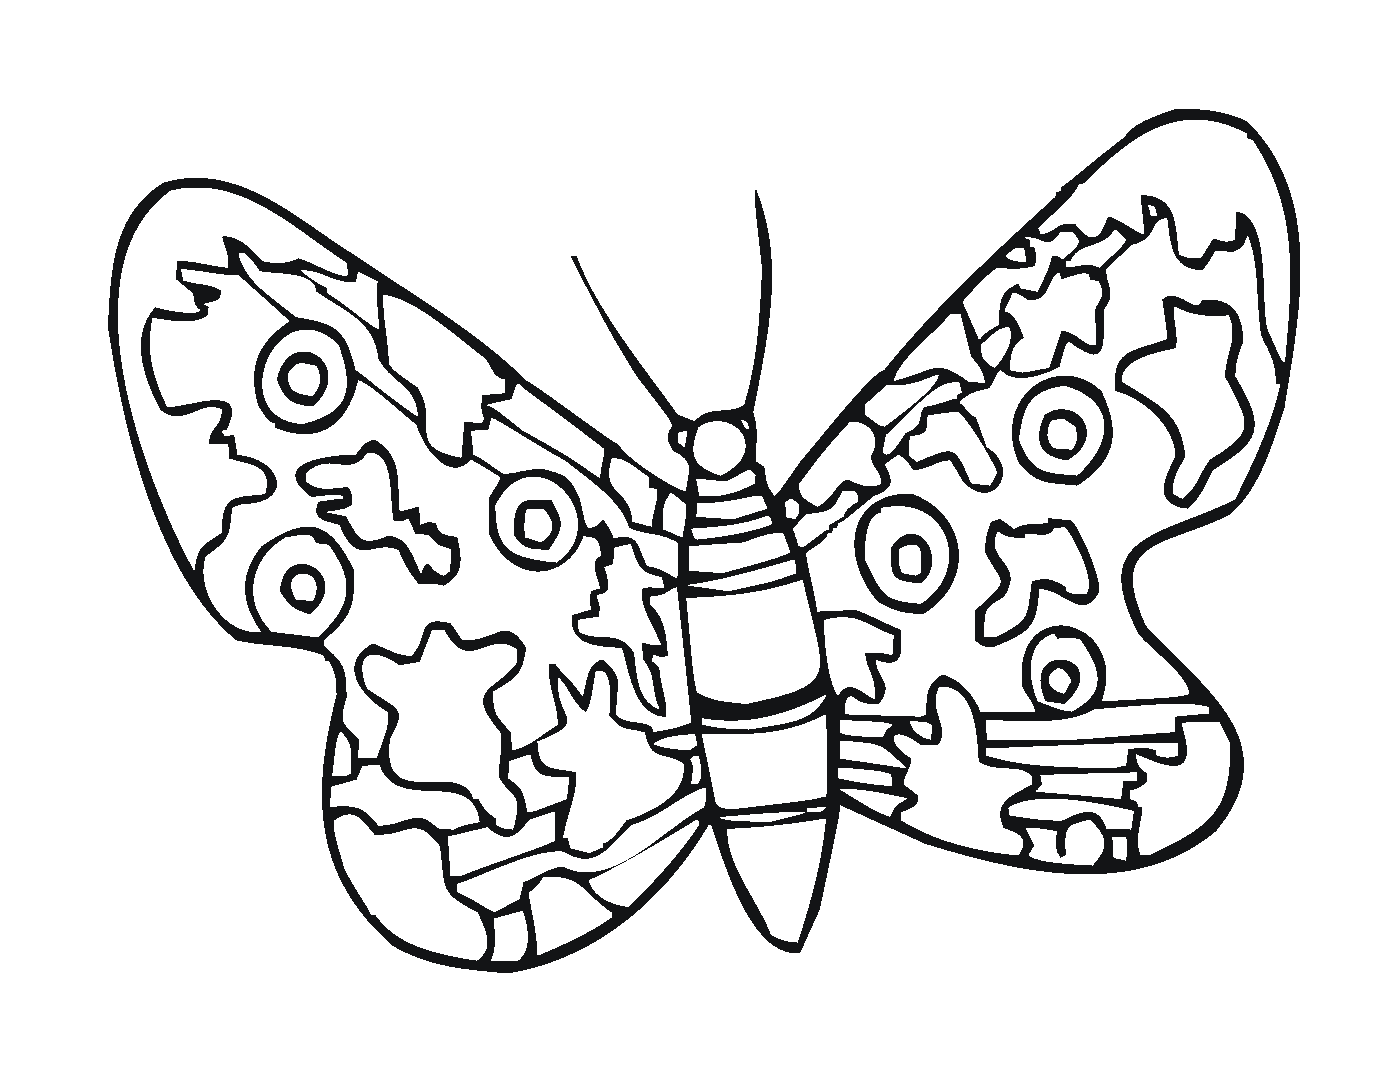  Элегантная бабочка, щекотливо сложенная 